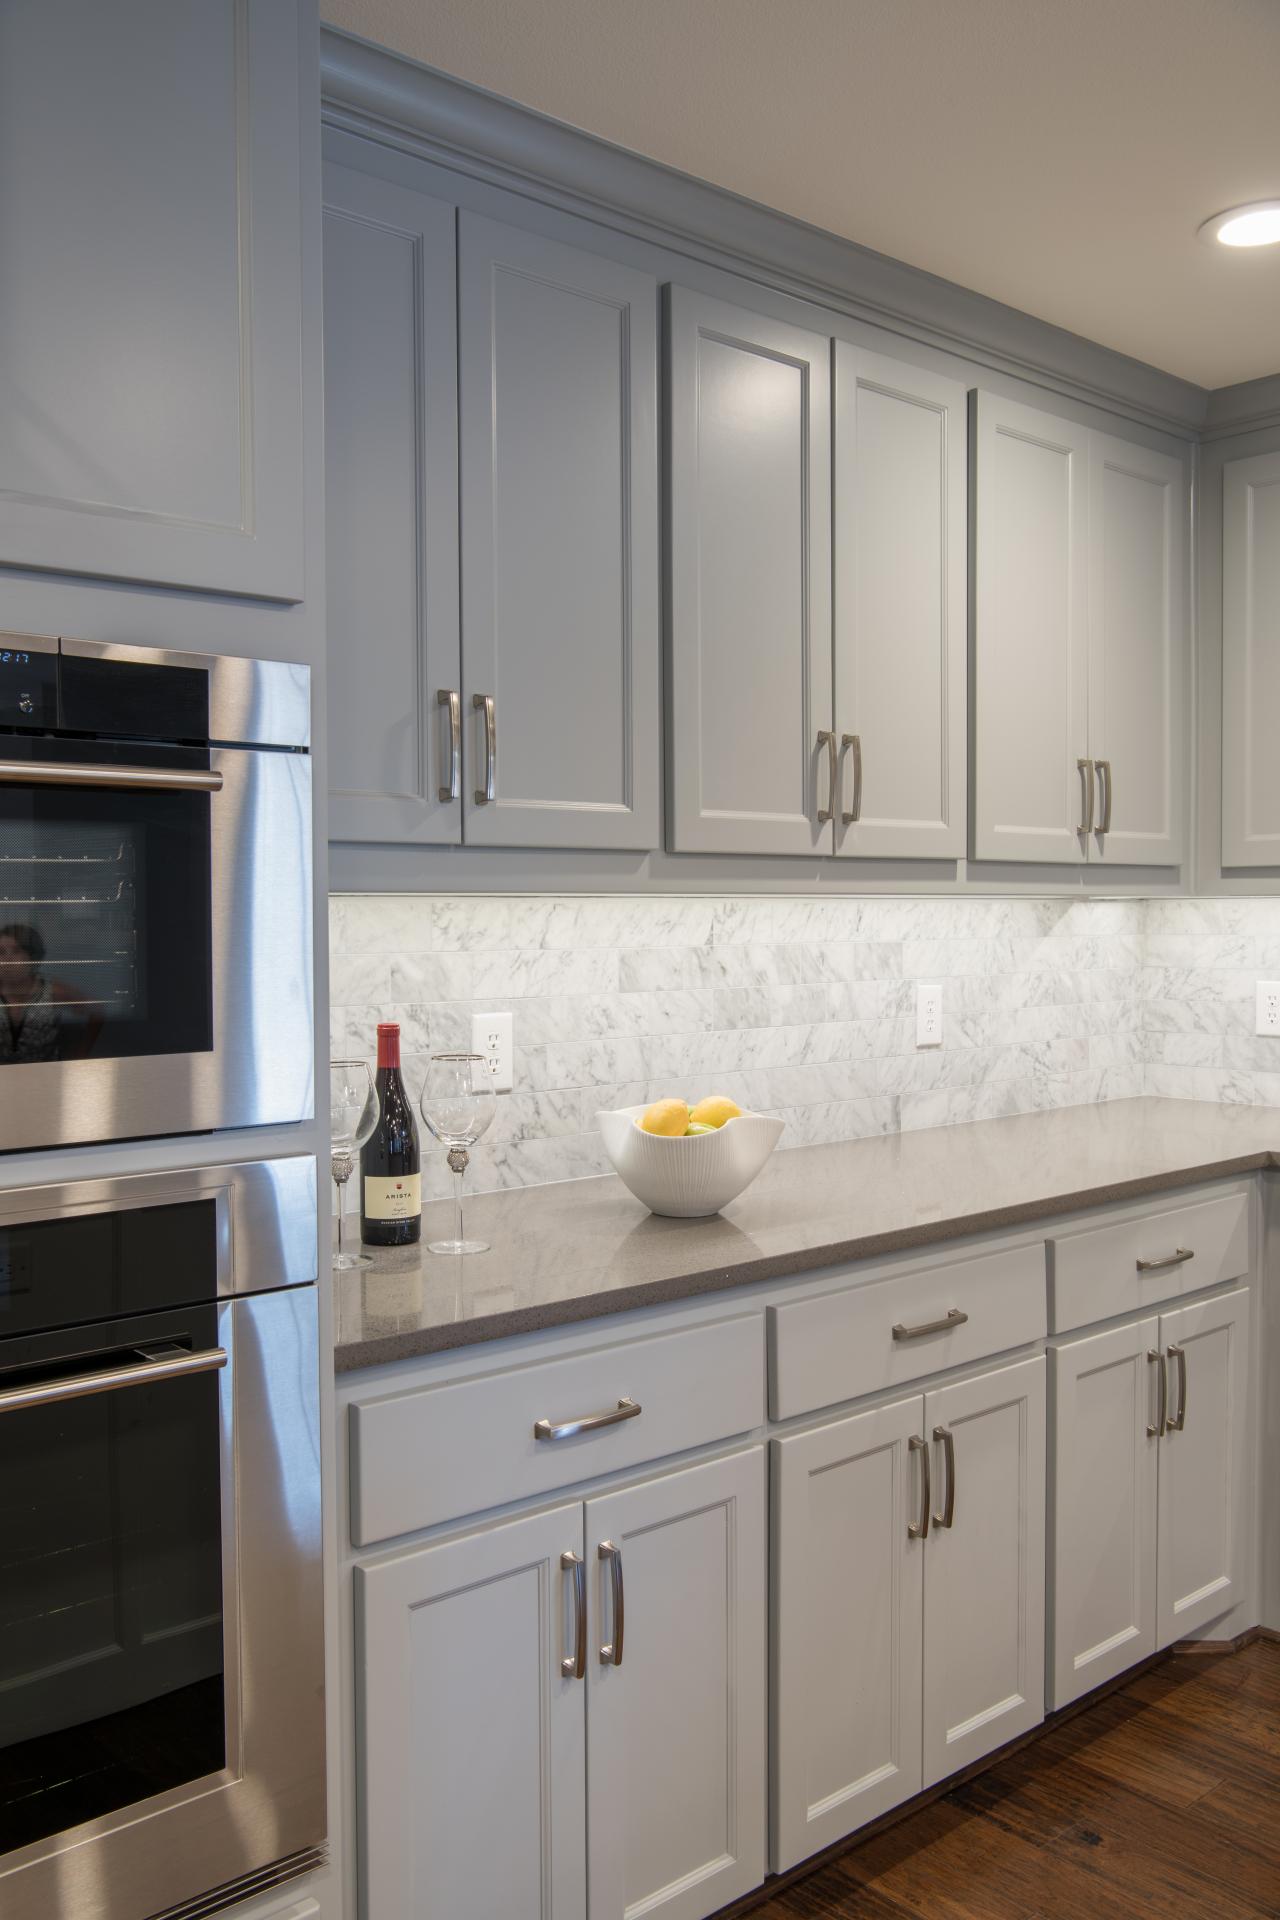  White Kitchen Cabinets Vs Gray News Update